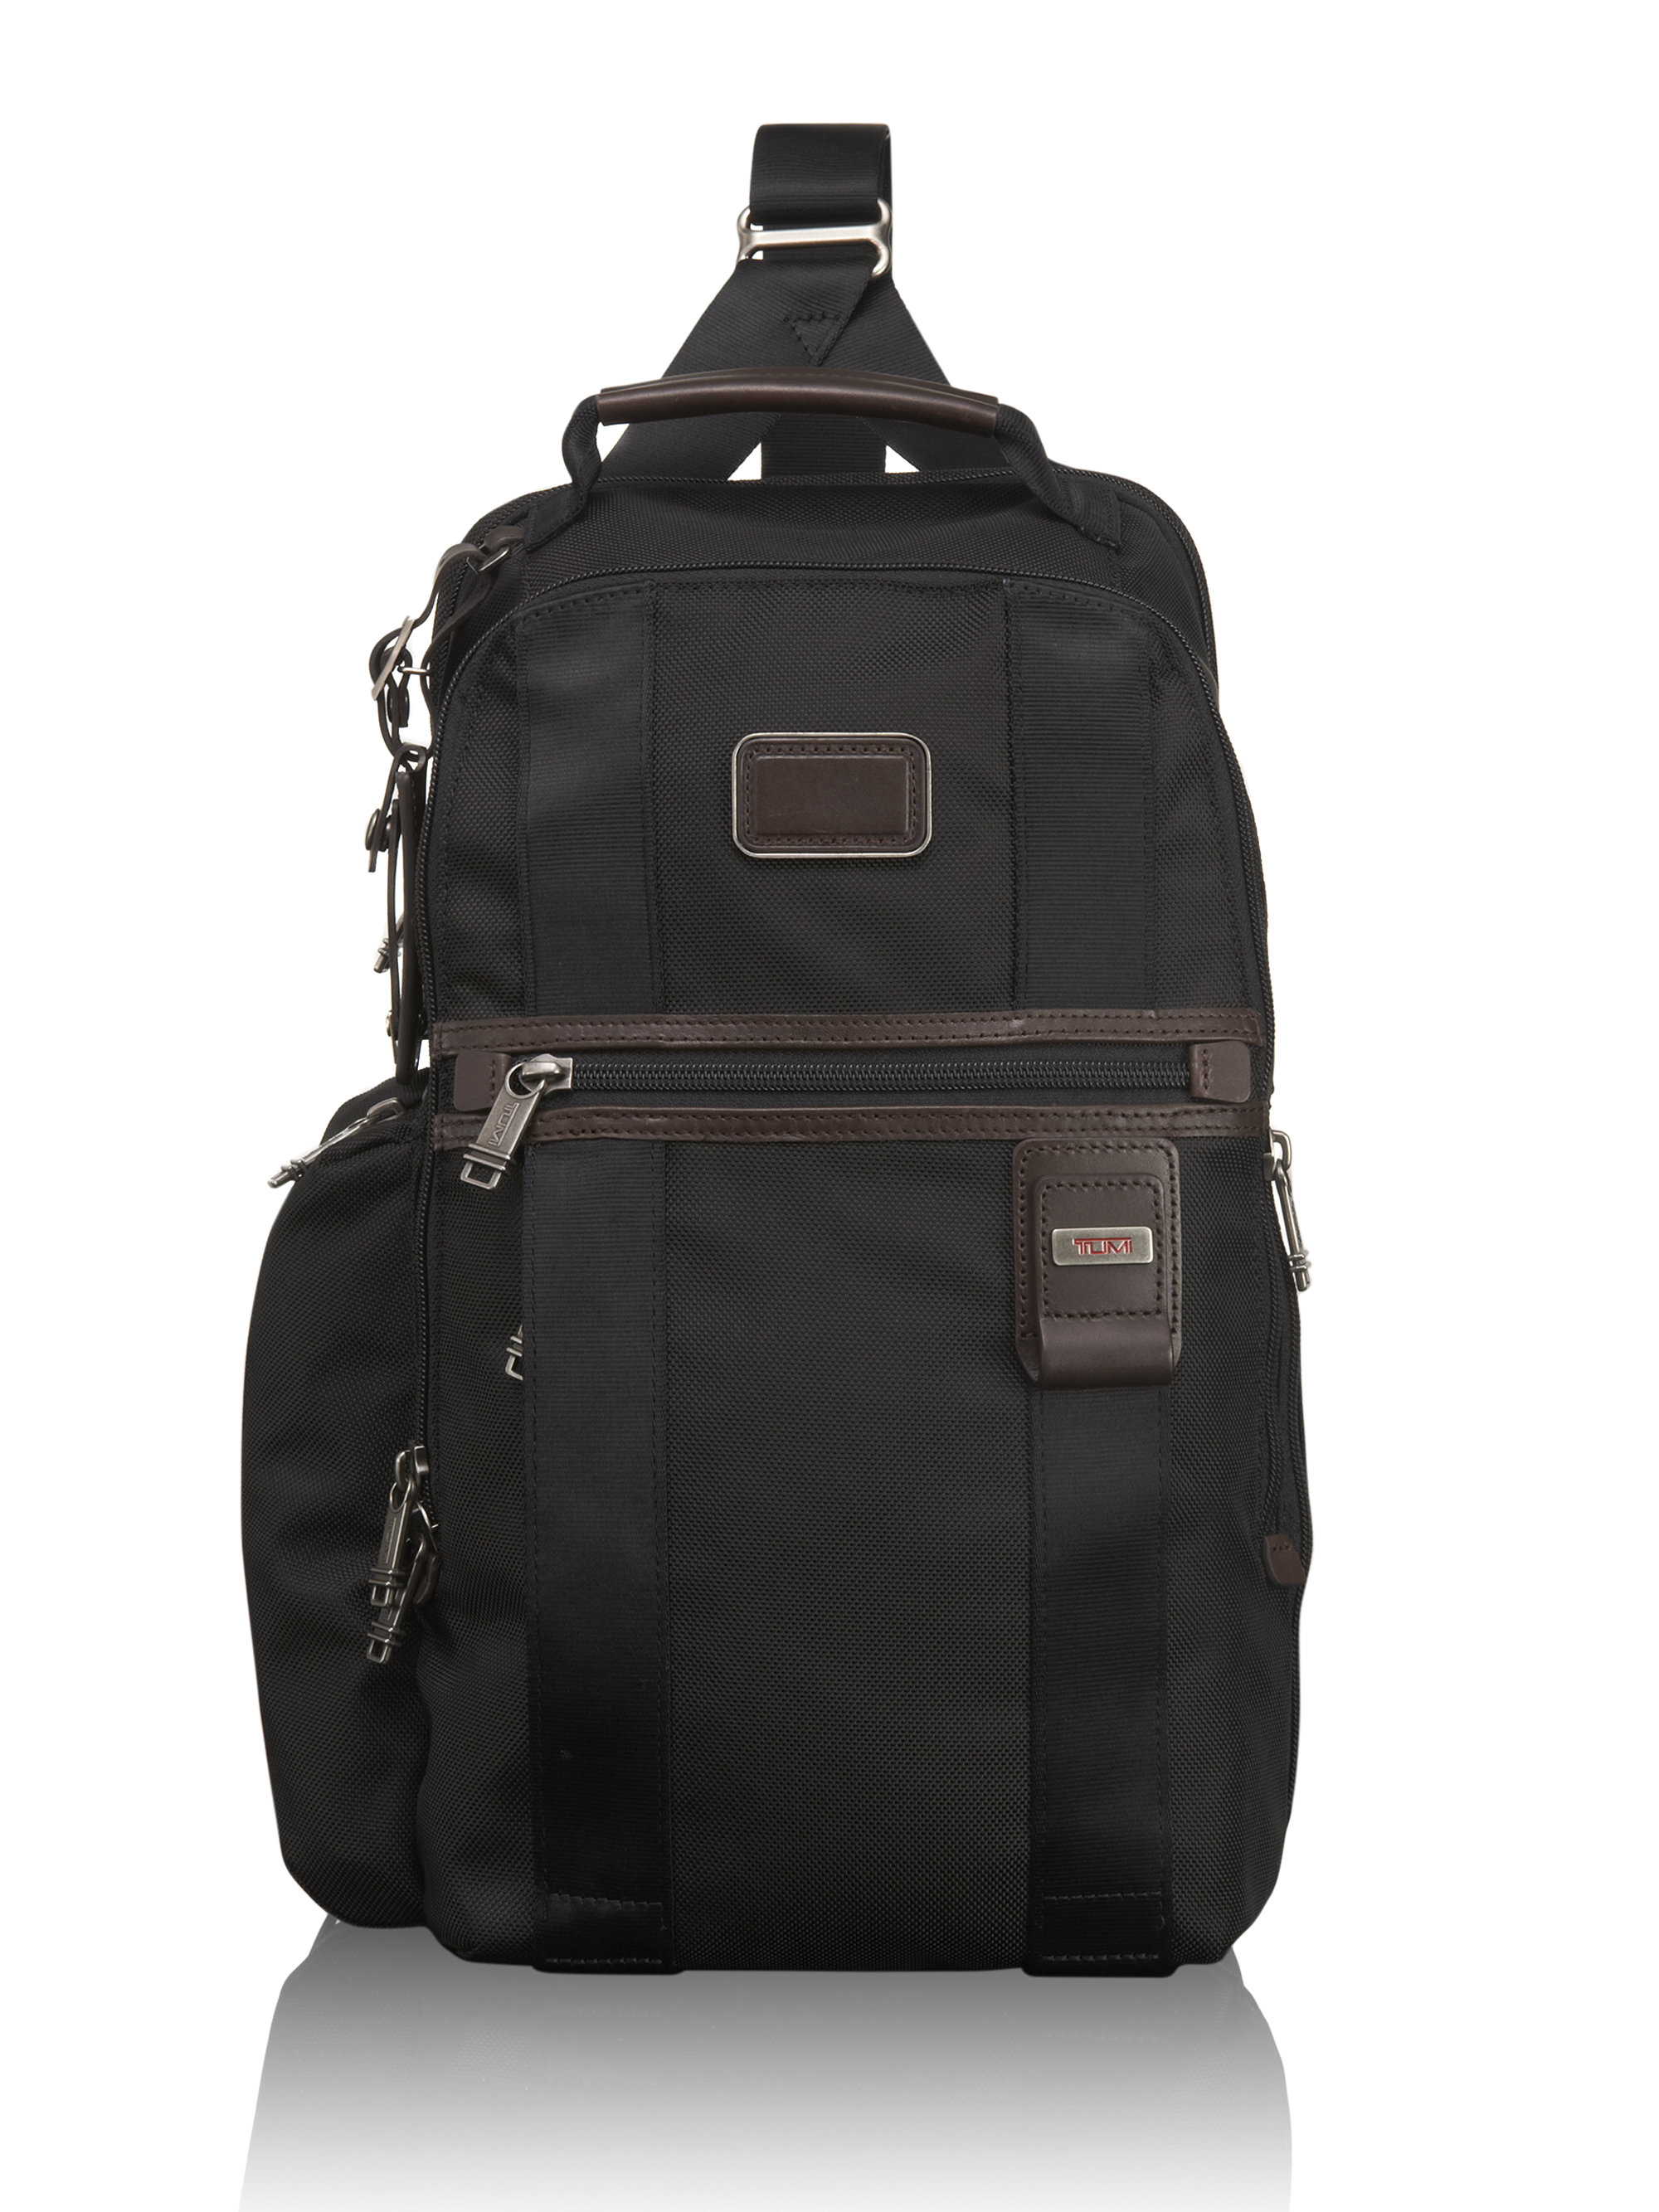 Tumi Bravo Greely Sling Backpack in Black for Men - Lyst